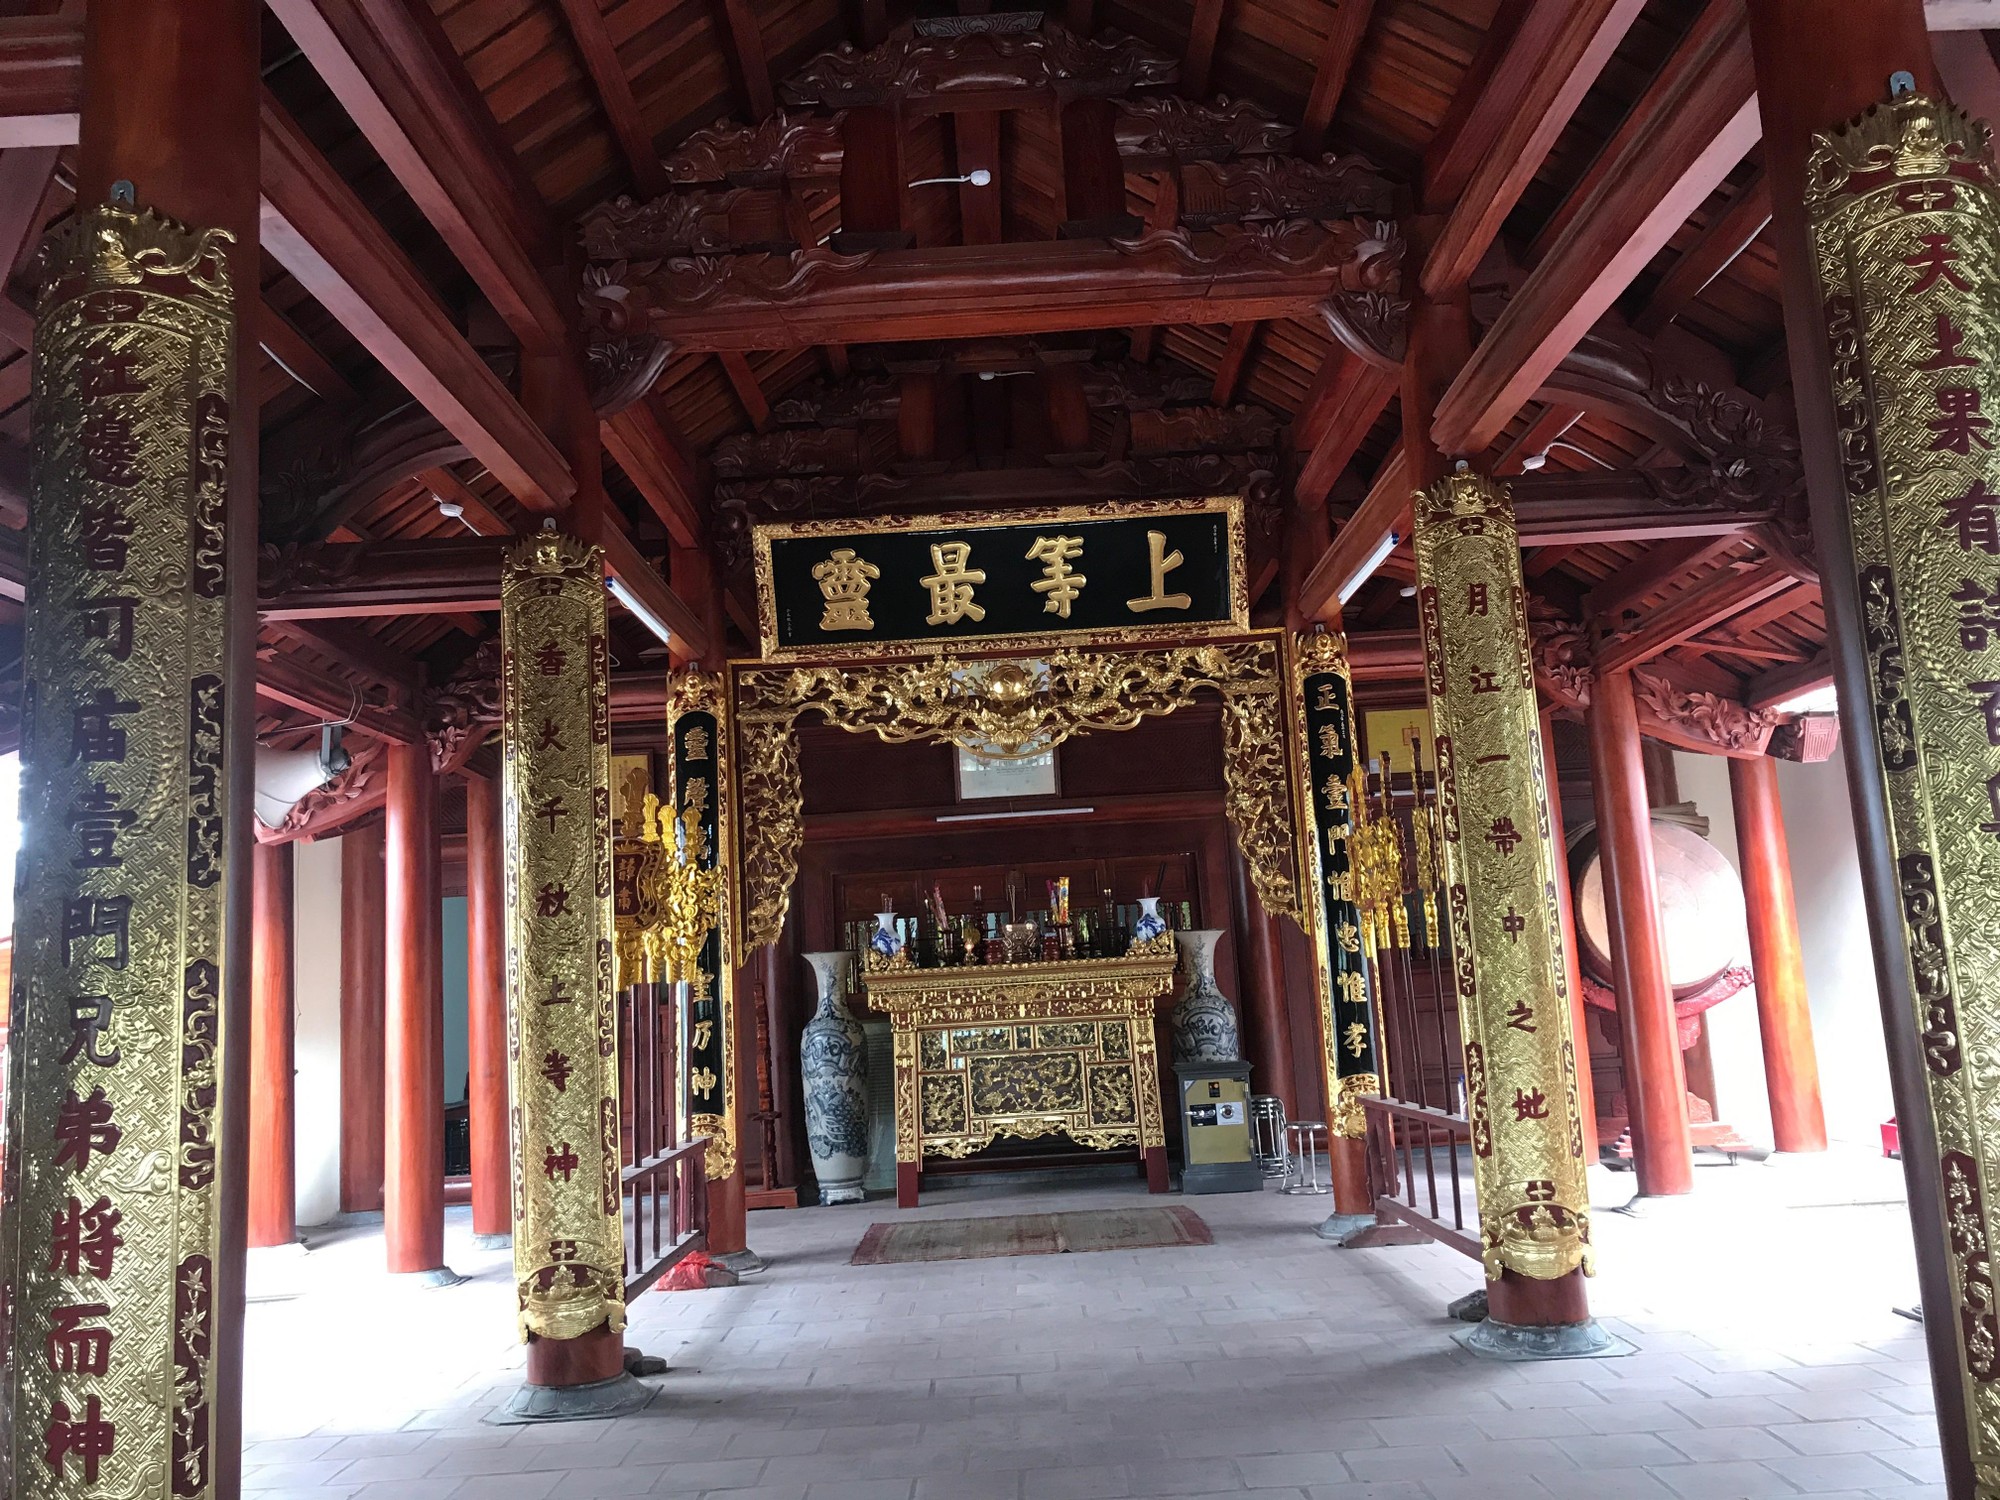 Đây là ngôi đền cổ ở Bắc Ninh-nơi ra đời của bài thơ Thần, bản Tuyên ngôn độc lập đầu tiên của Việt Nam - Ảnh 3.